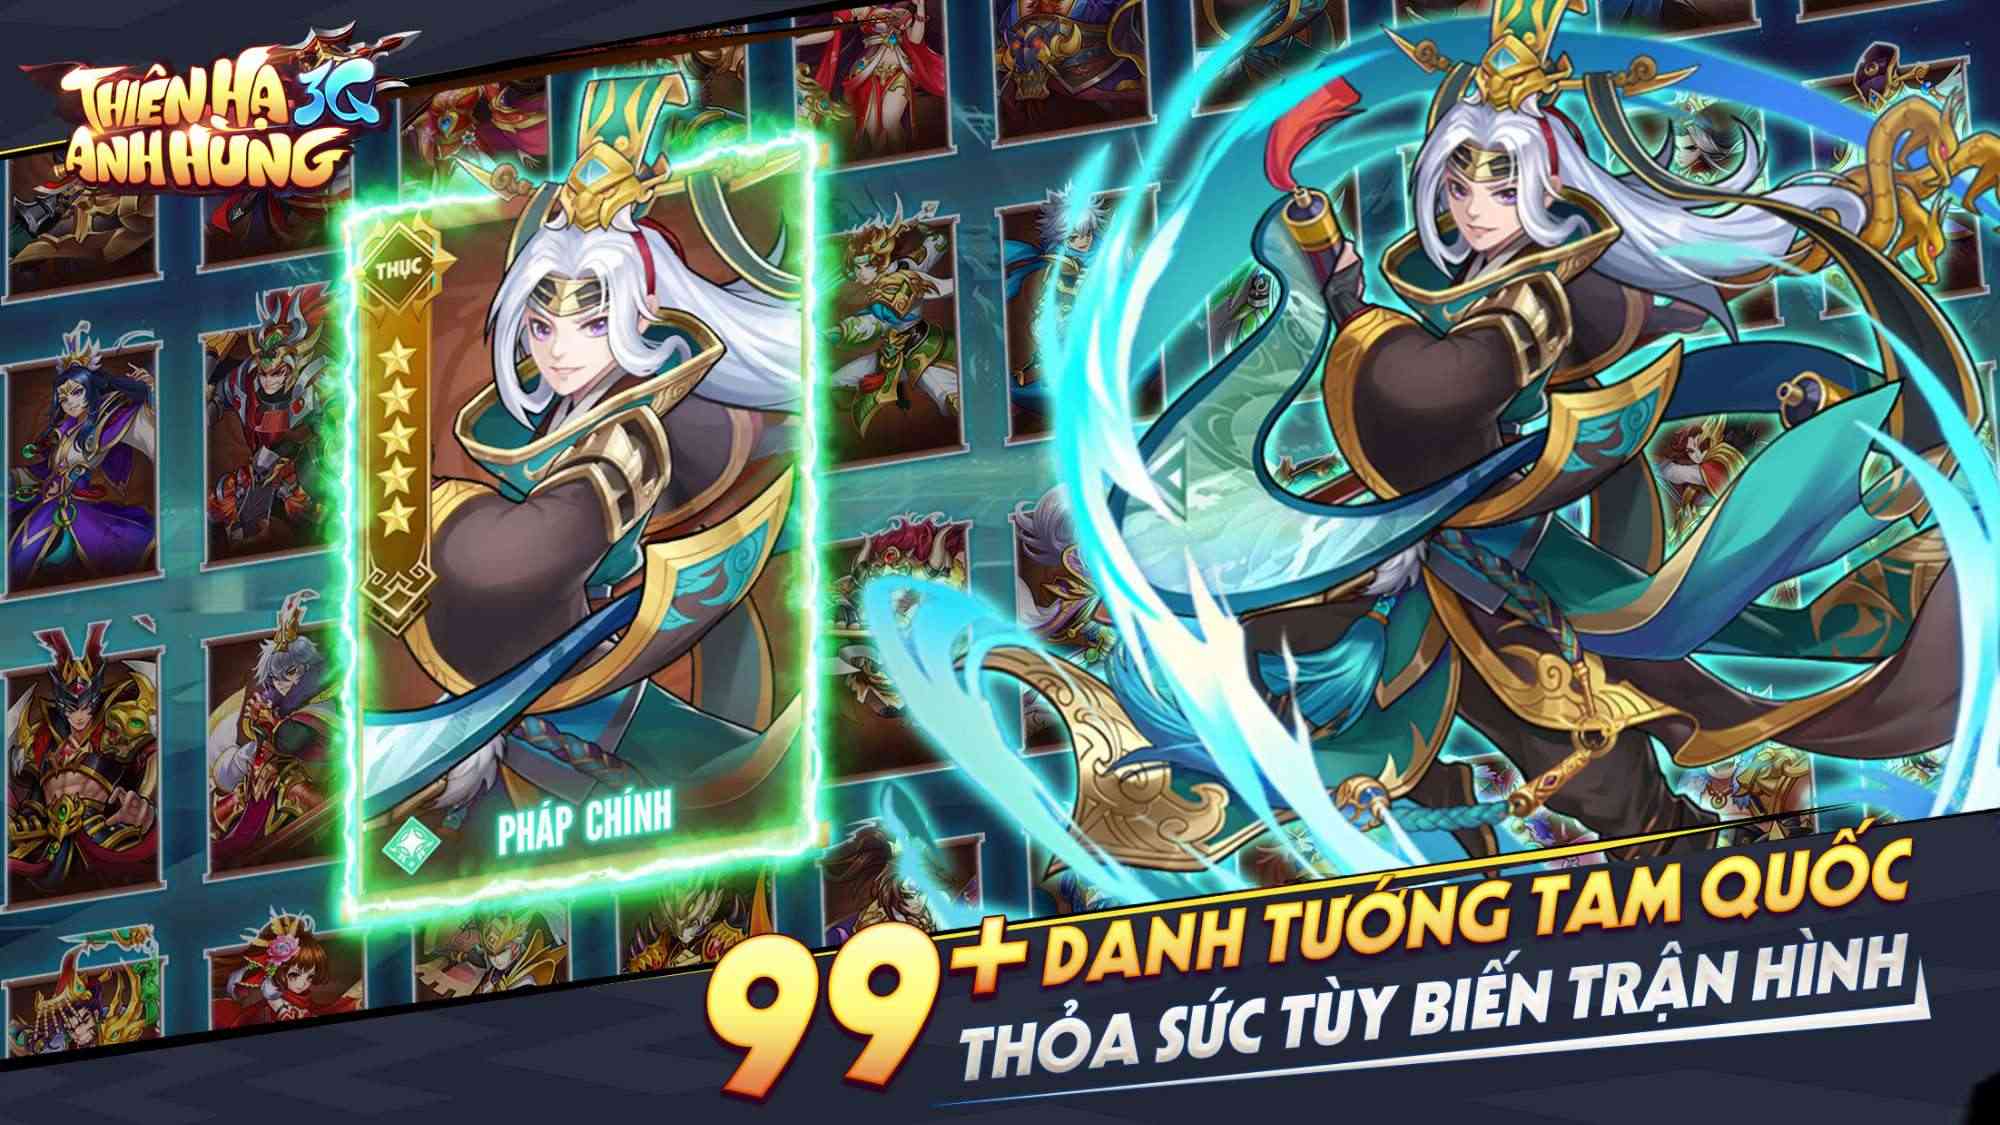 Thiên Hạ Anh Hùng 3Q – Tựa game đấu tướng chiến thuật Tam Quốc ‘make in Việt Nam’ sắp được ACE Games ra mắt vào đầu tháng 11